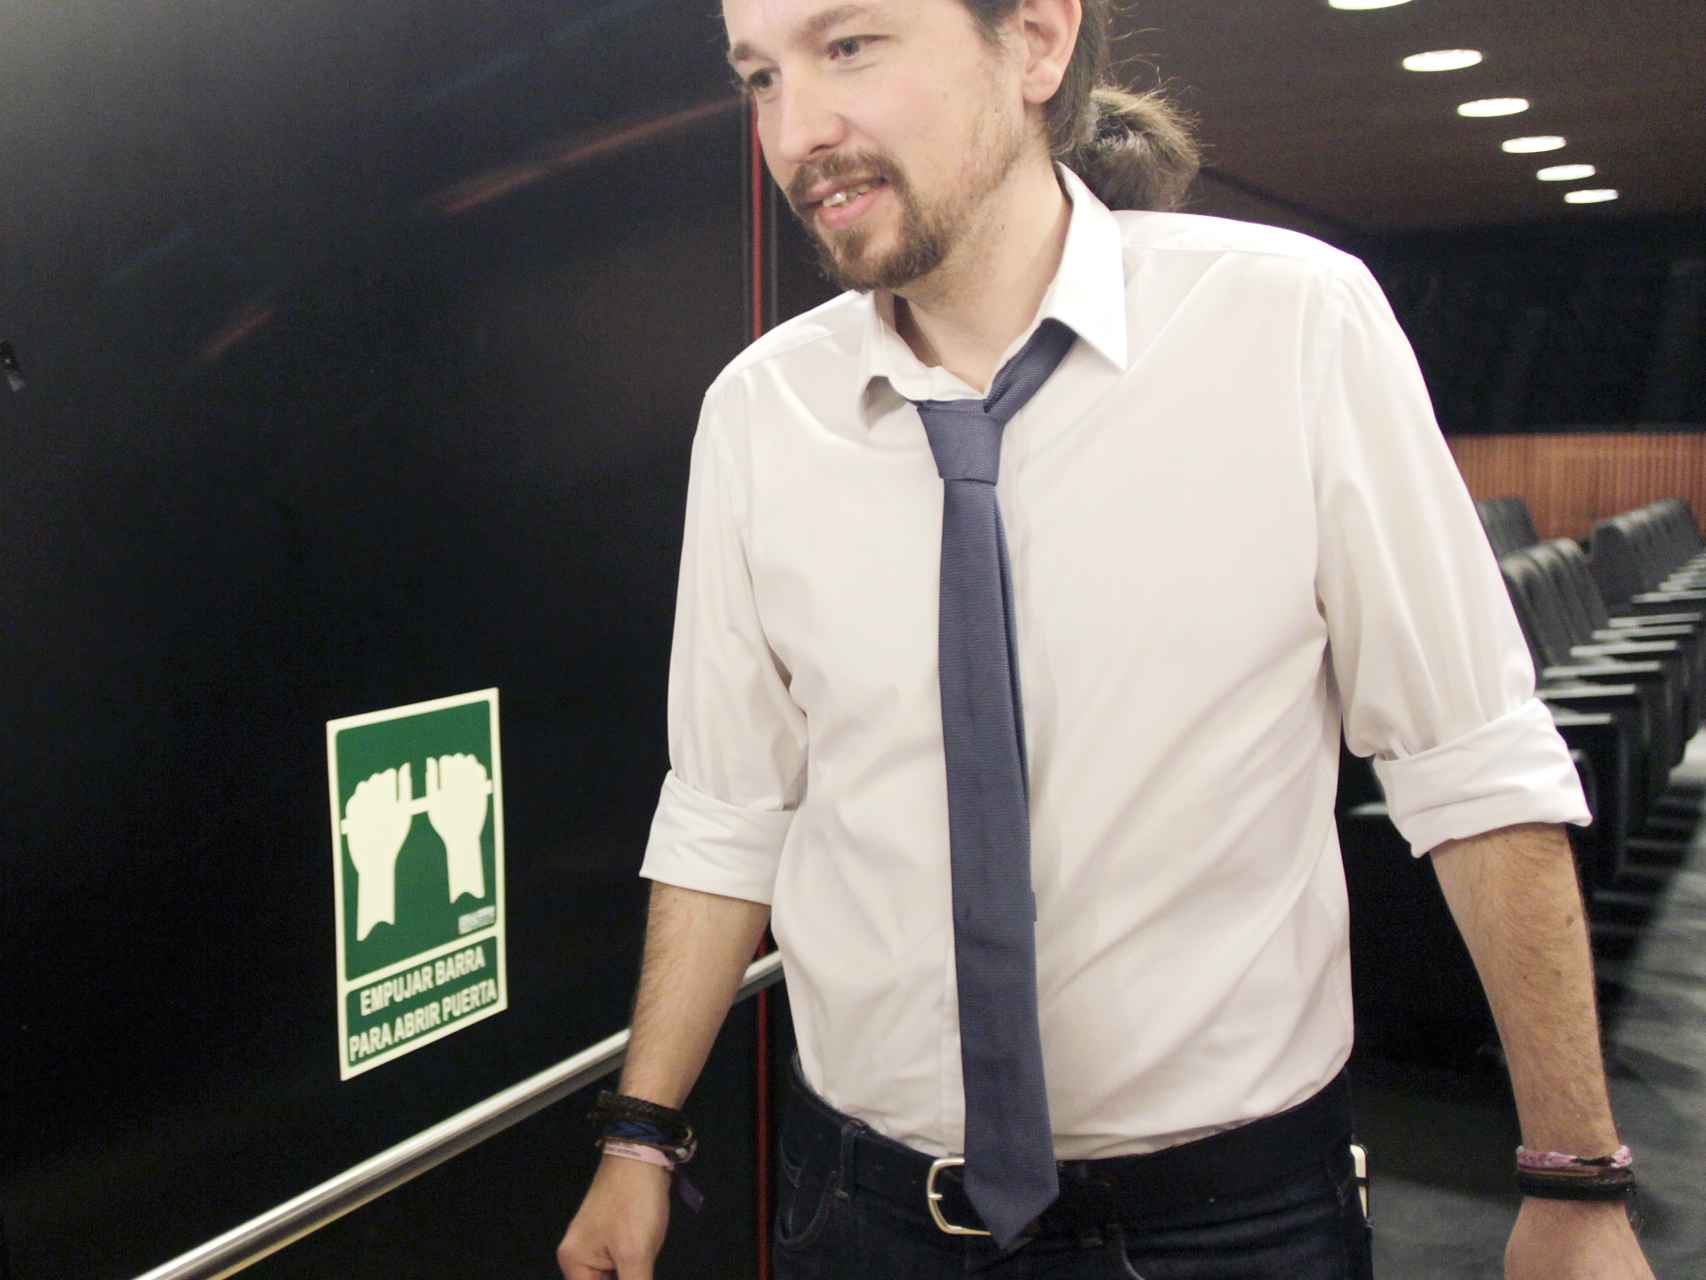 El líder de Unidos Podemos con corbata en un acto oficial en Madrid.